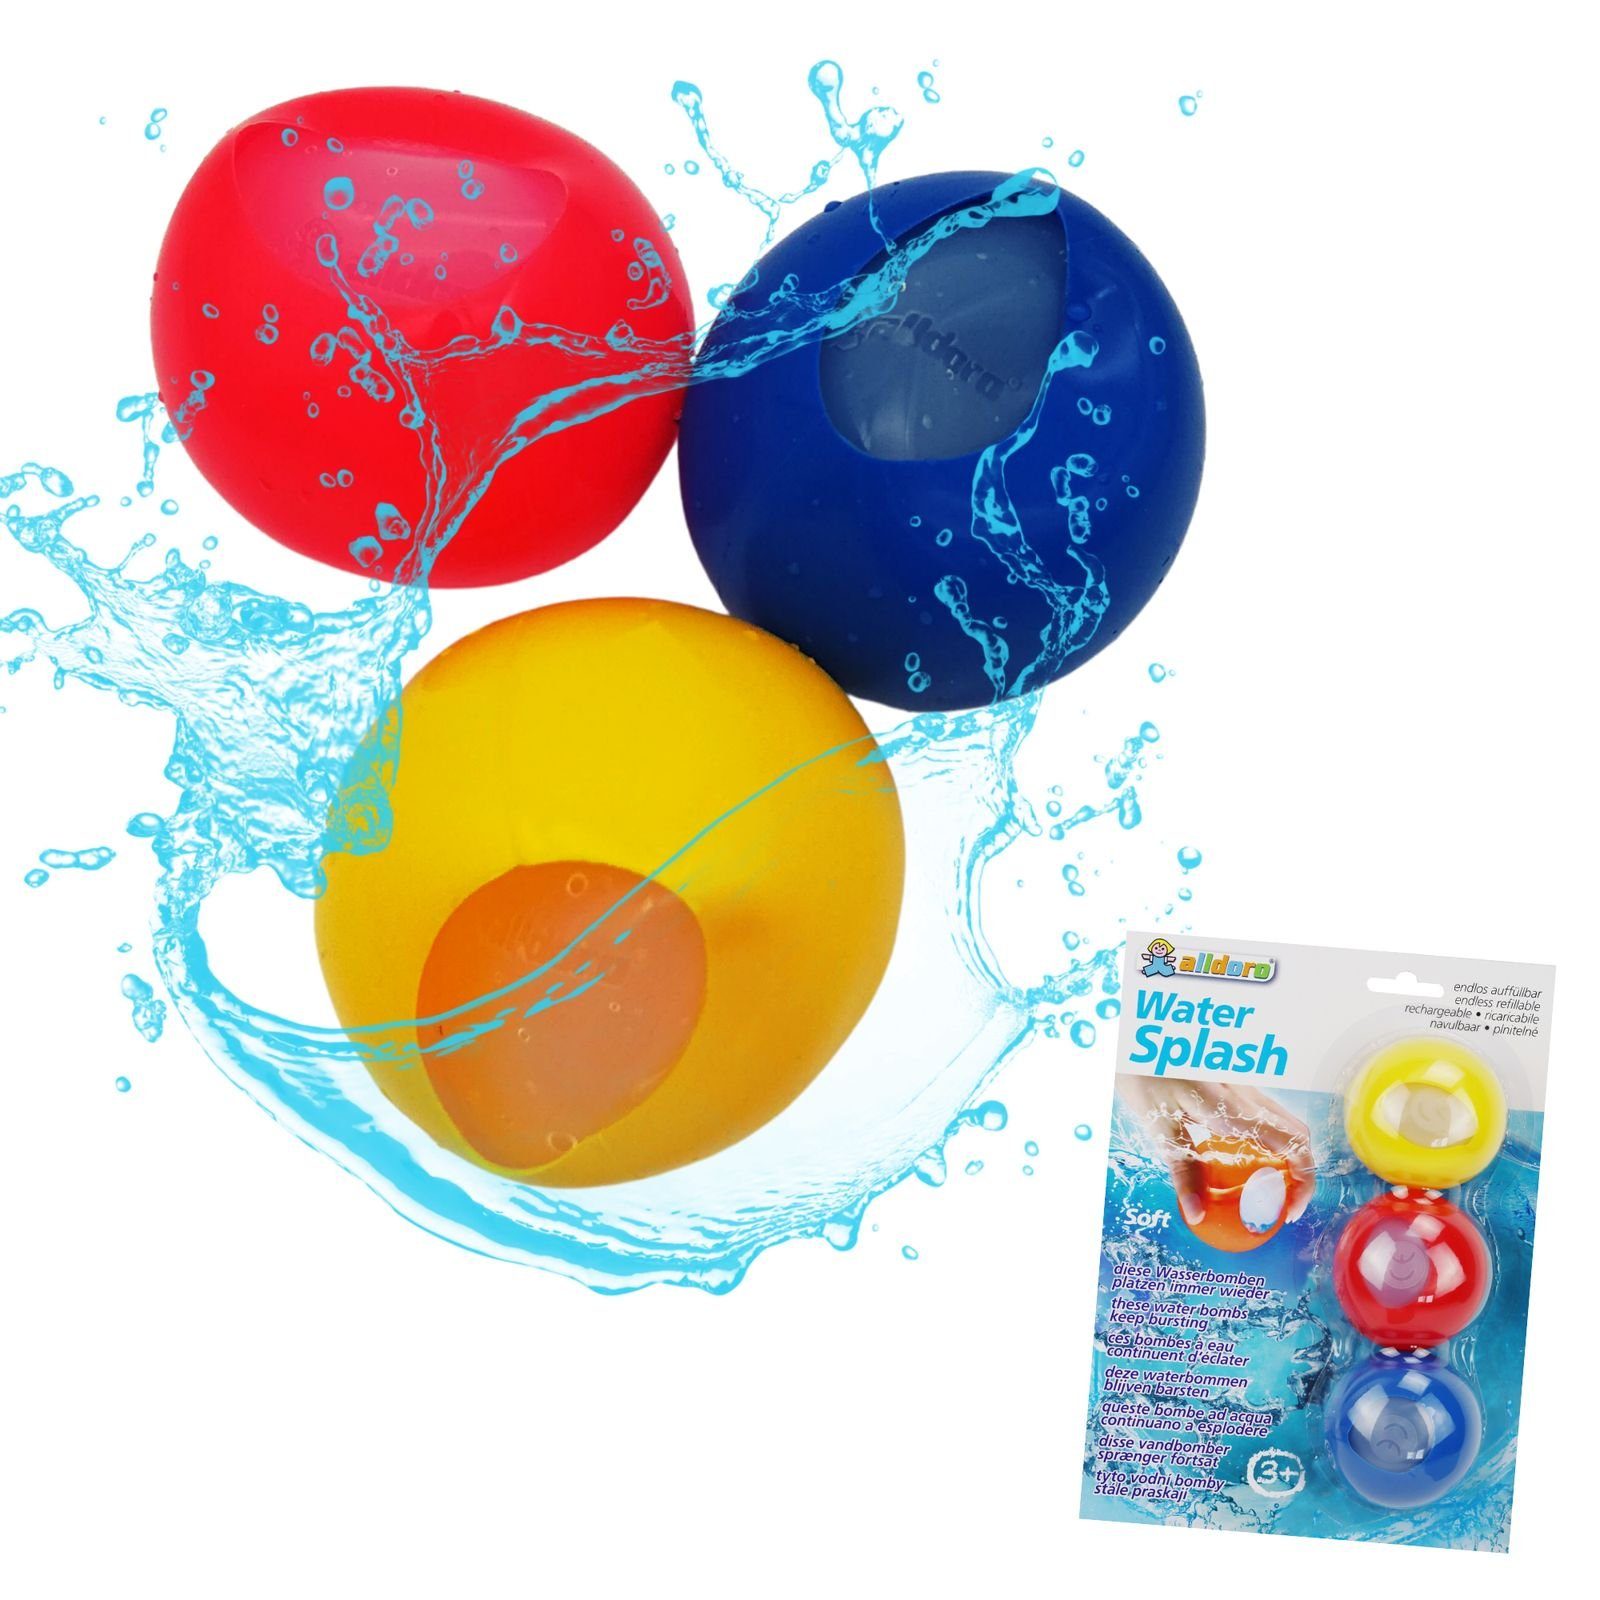 alldoro Wasserbombe 63027, Water Splash, wiederverwendbar, 3er Set in rot, gelb und blau